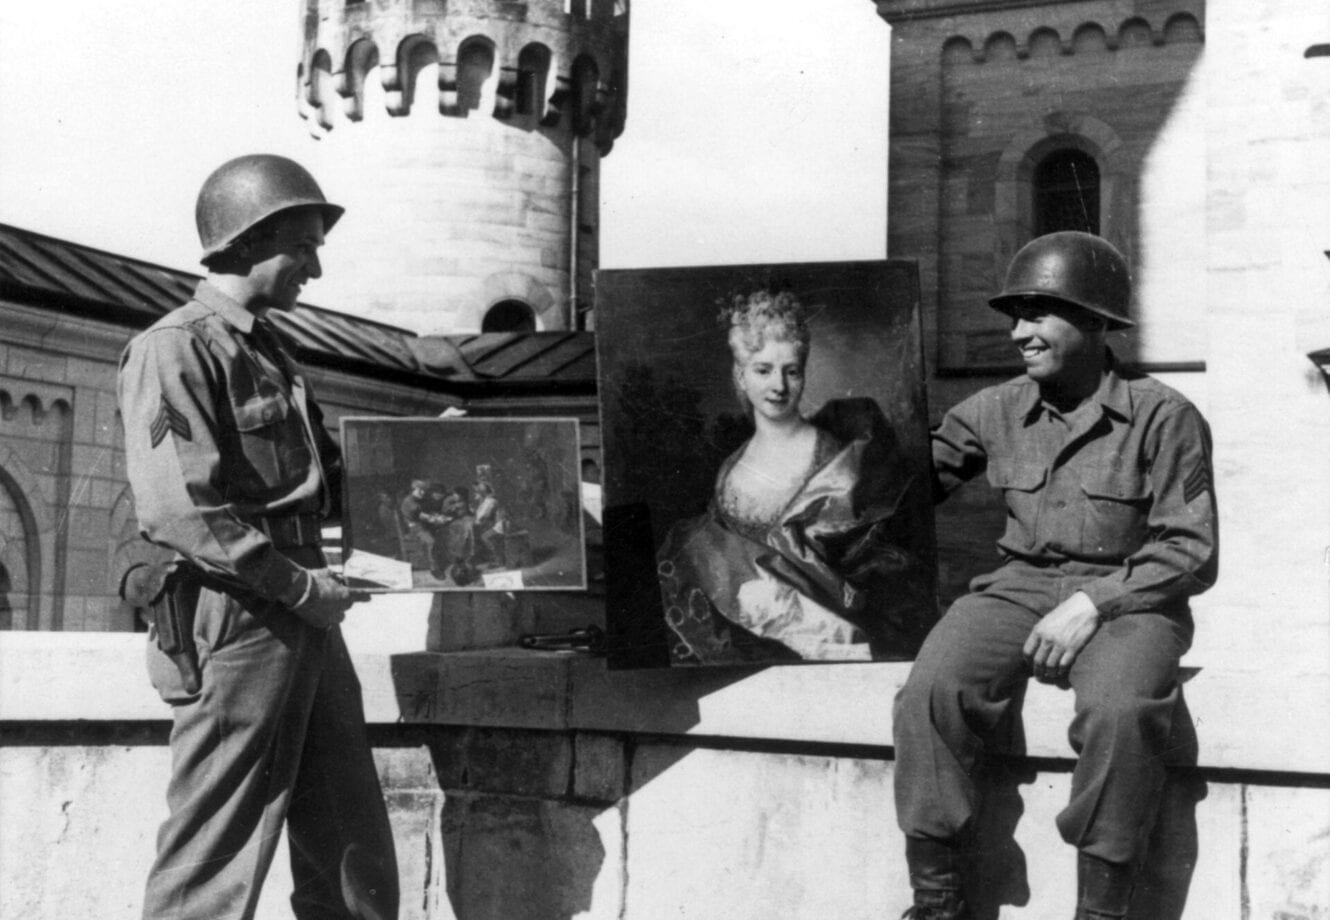 Amerikaanse soldaten tonen roofkunst op het Duitse kasteel Neuschwanstein, 1945